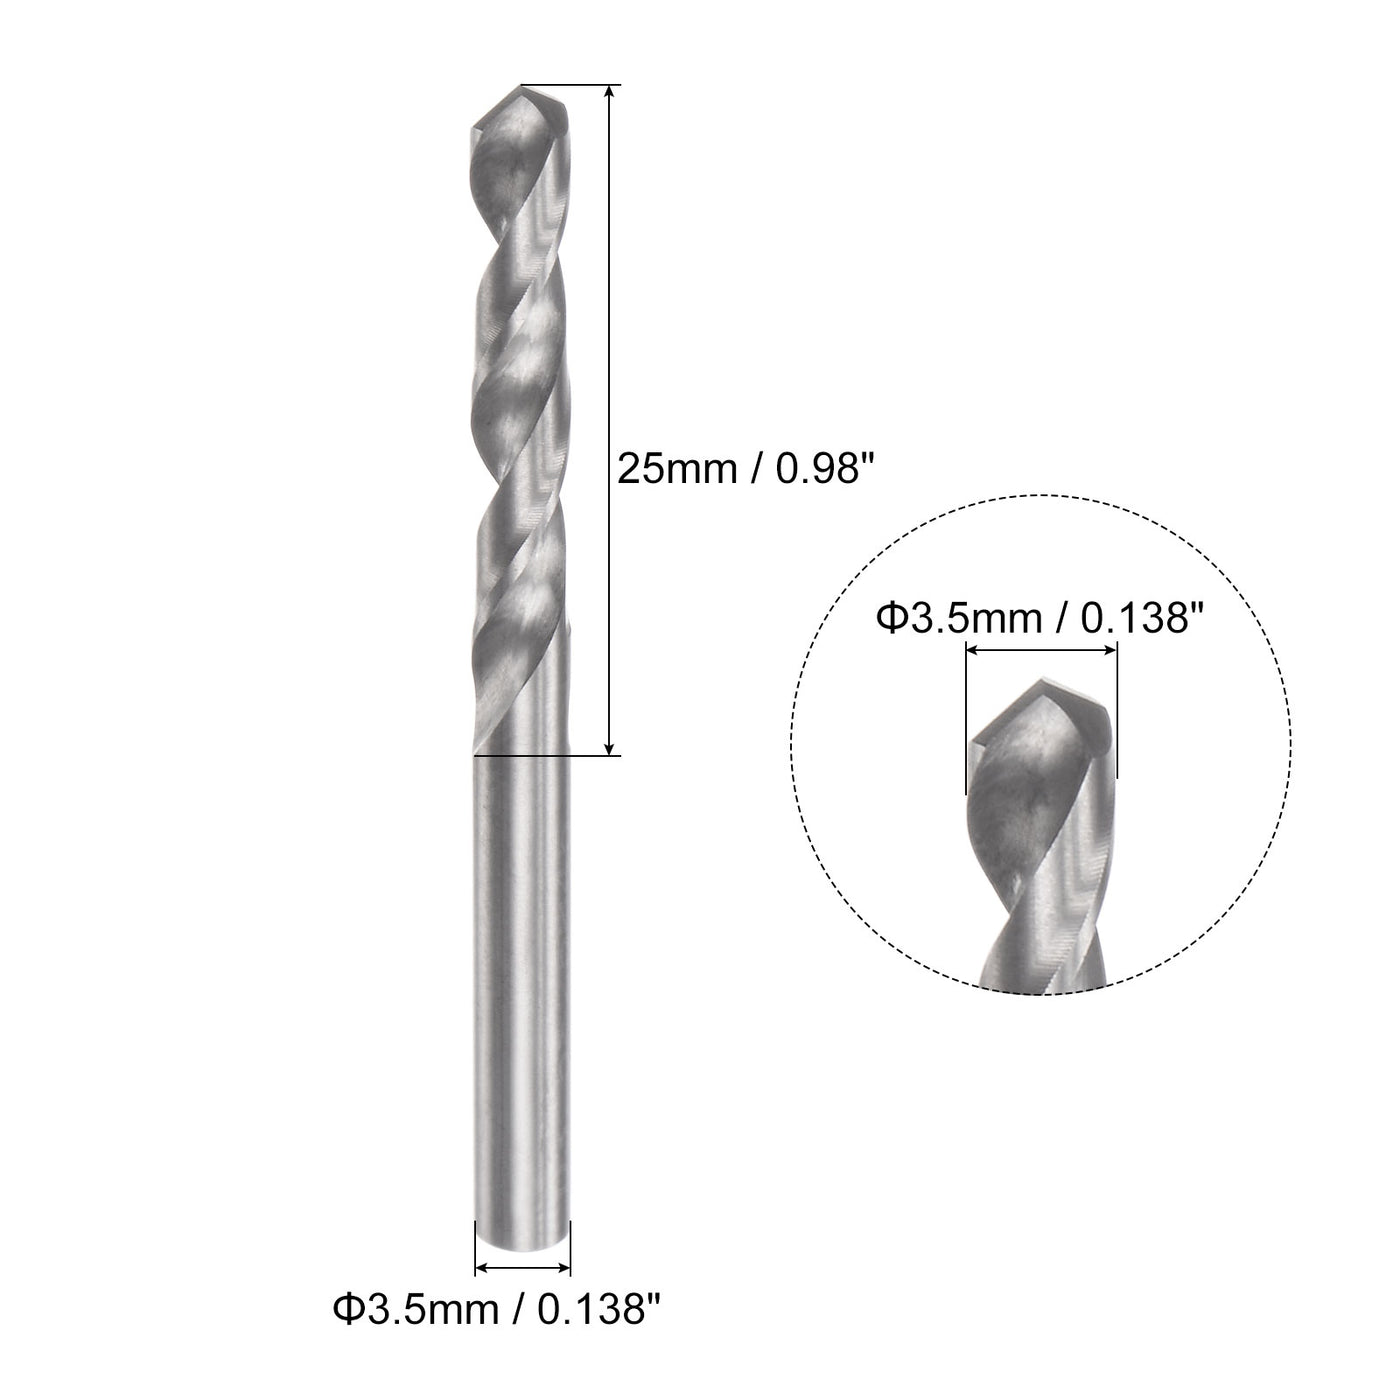 uxcell Uxcell 3.5mm C2/K20 Tungsten Carbide Straight Shank Spiral Flutes Twist Drill Bit